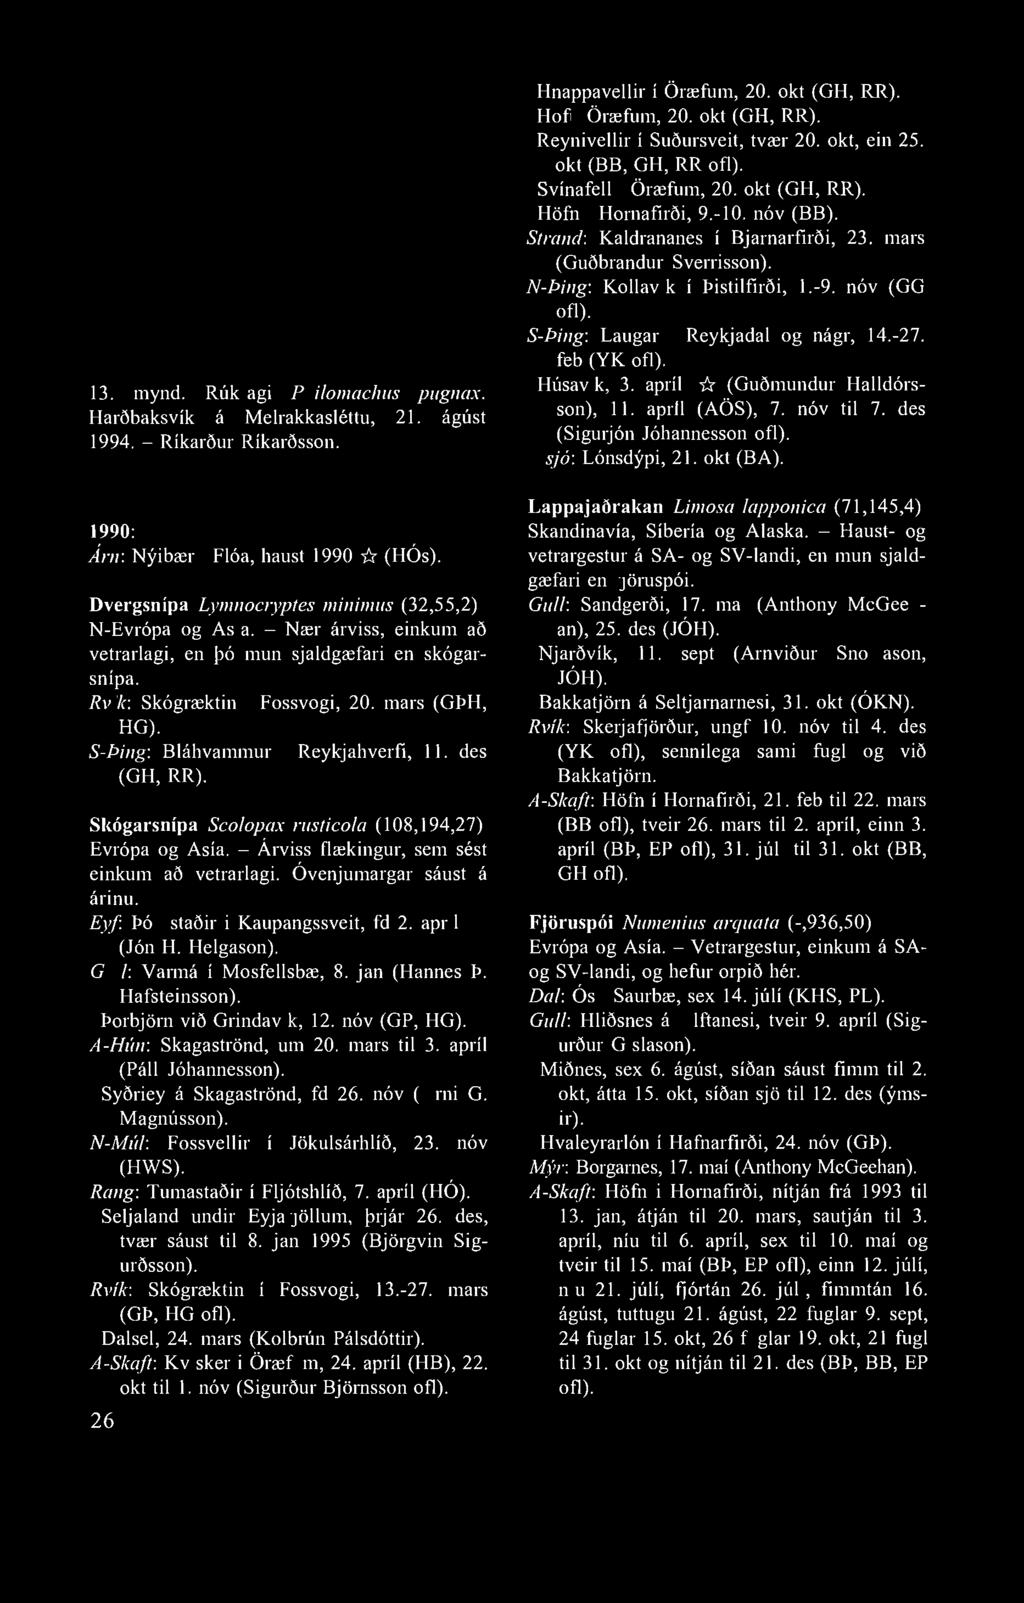 13. mynd. Rúkragi Philomachus pugnax. Harðbaksvík á Melrakkasléttu, 21. ágúst 1994. - Ríkarður Ríkarðsson. 1990: Árn: Nýibær í Flóa, haust 1990 -fr (HÓs).